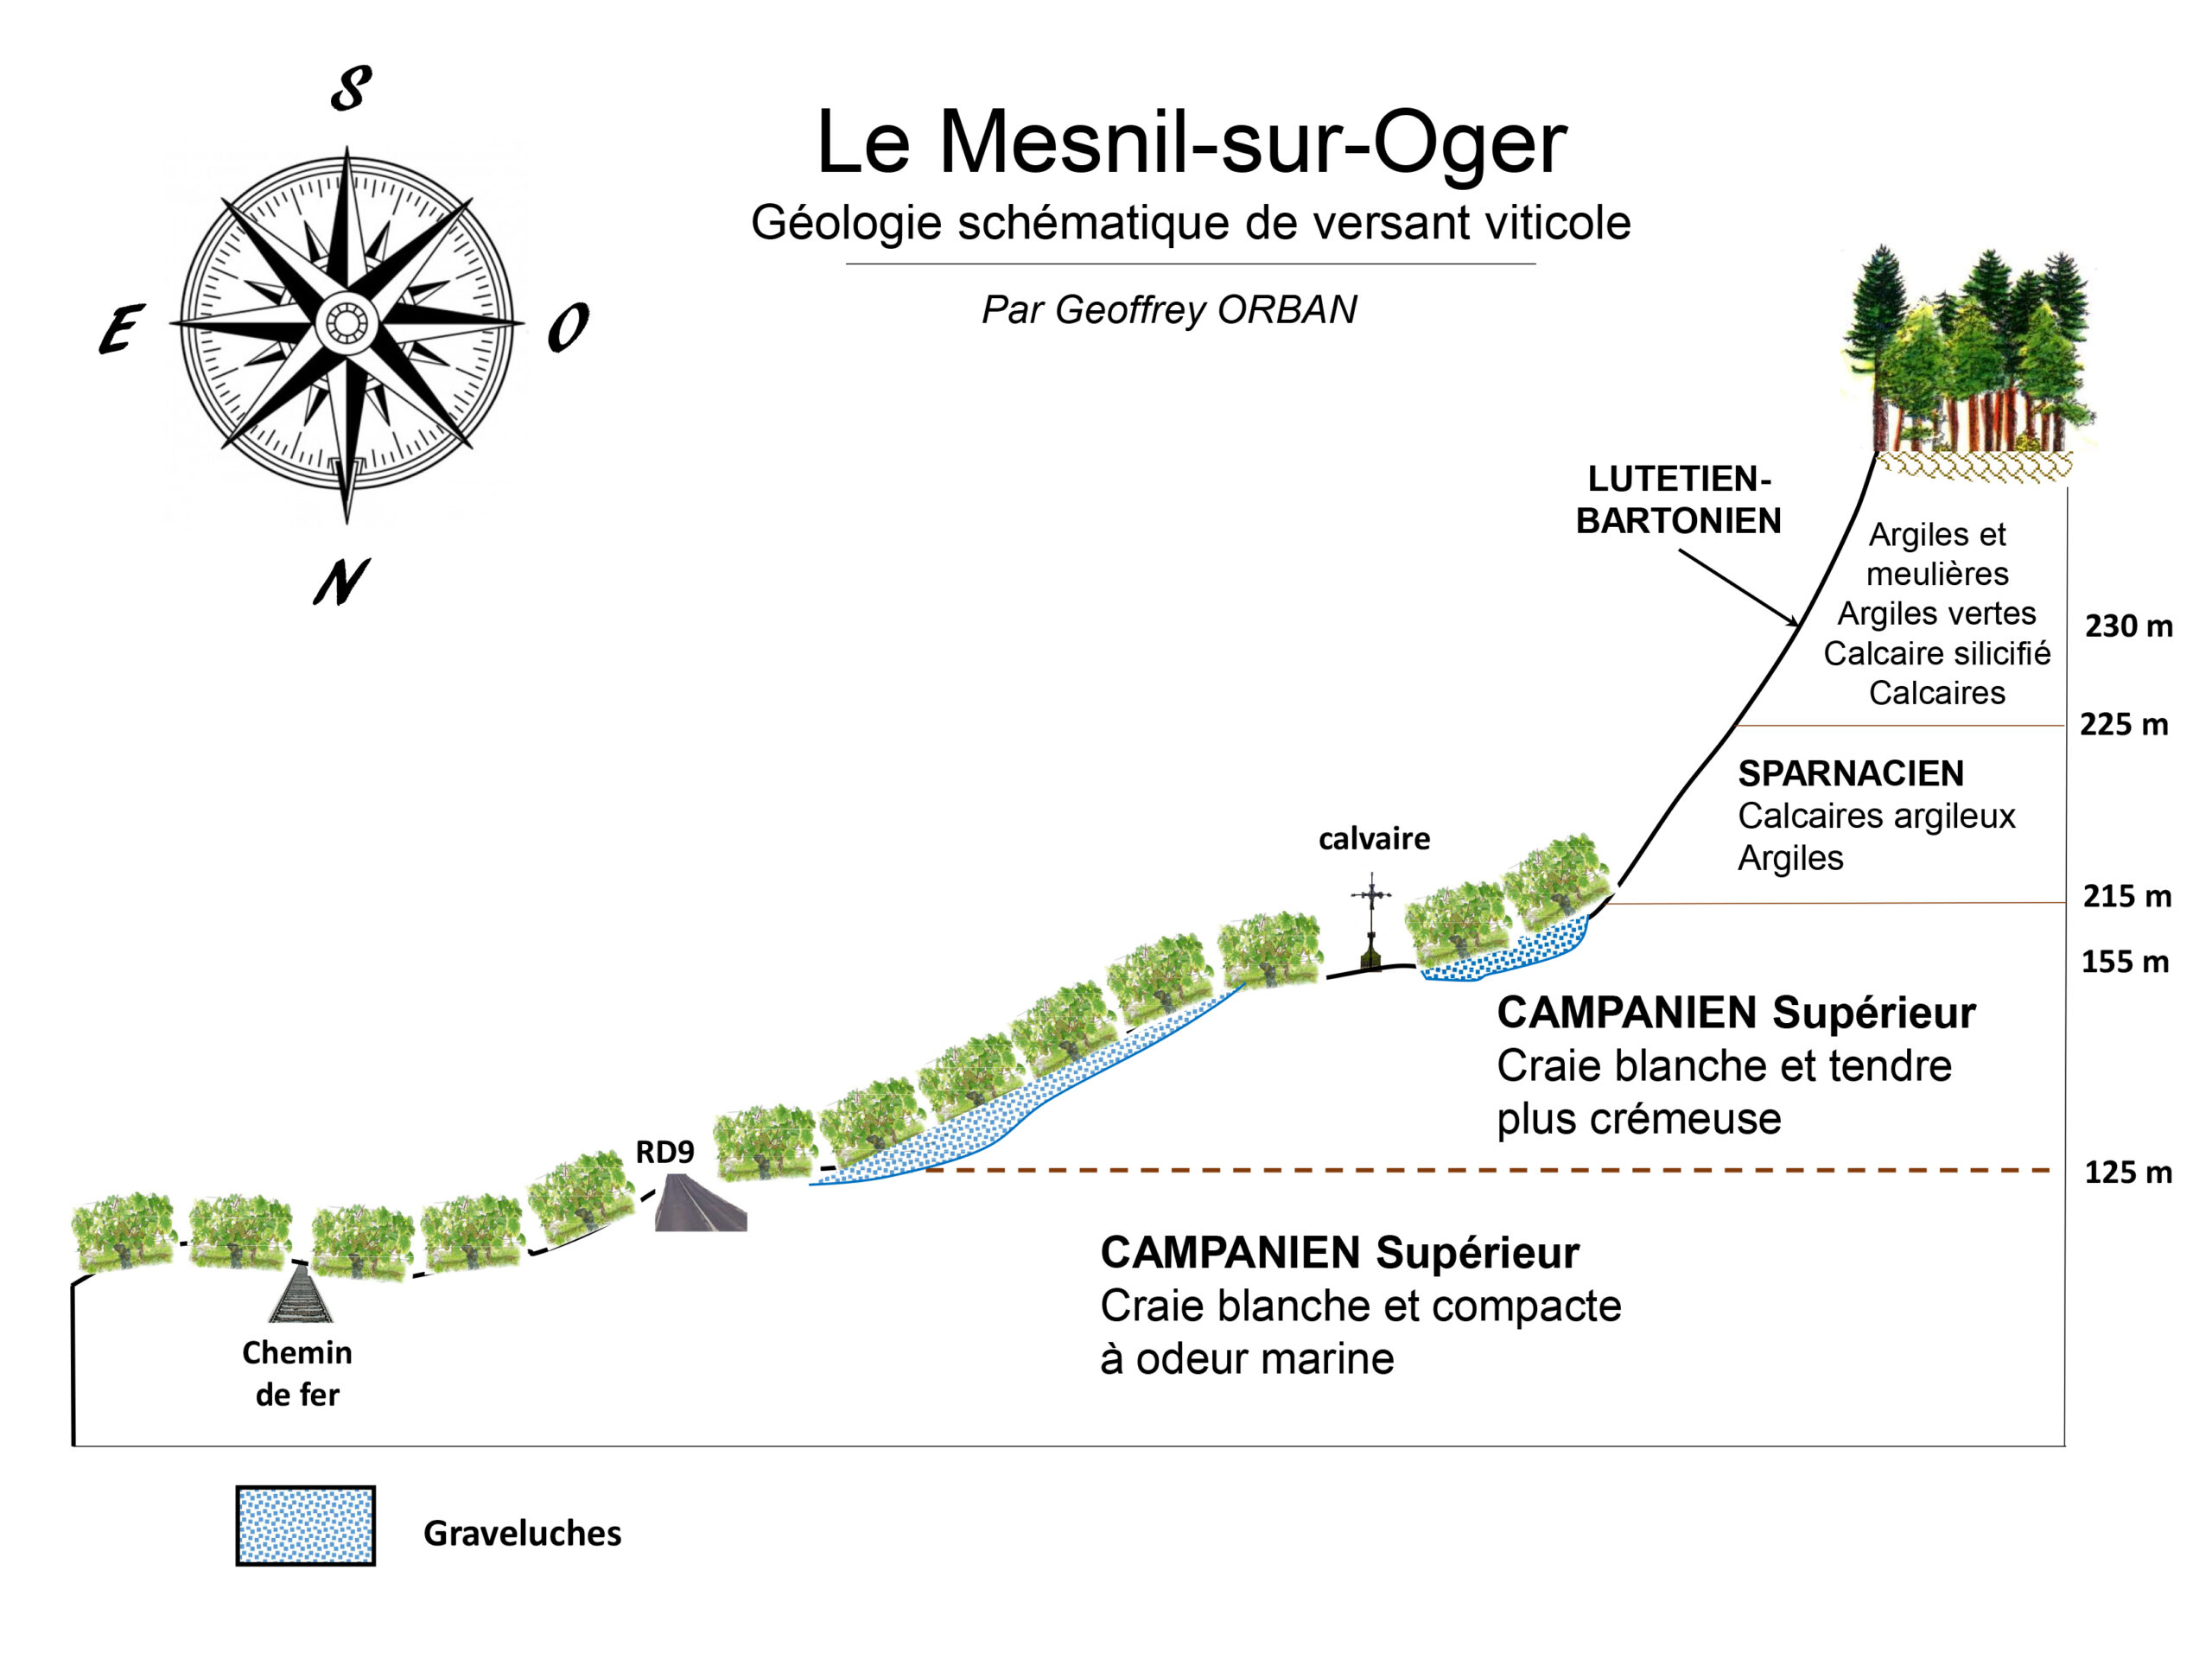 Le Mesnil-sur-Oger, domaine paysan devenu Or blanc